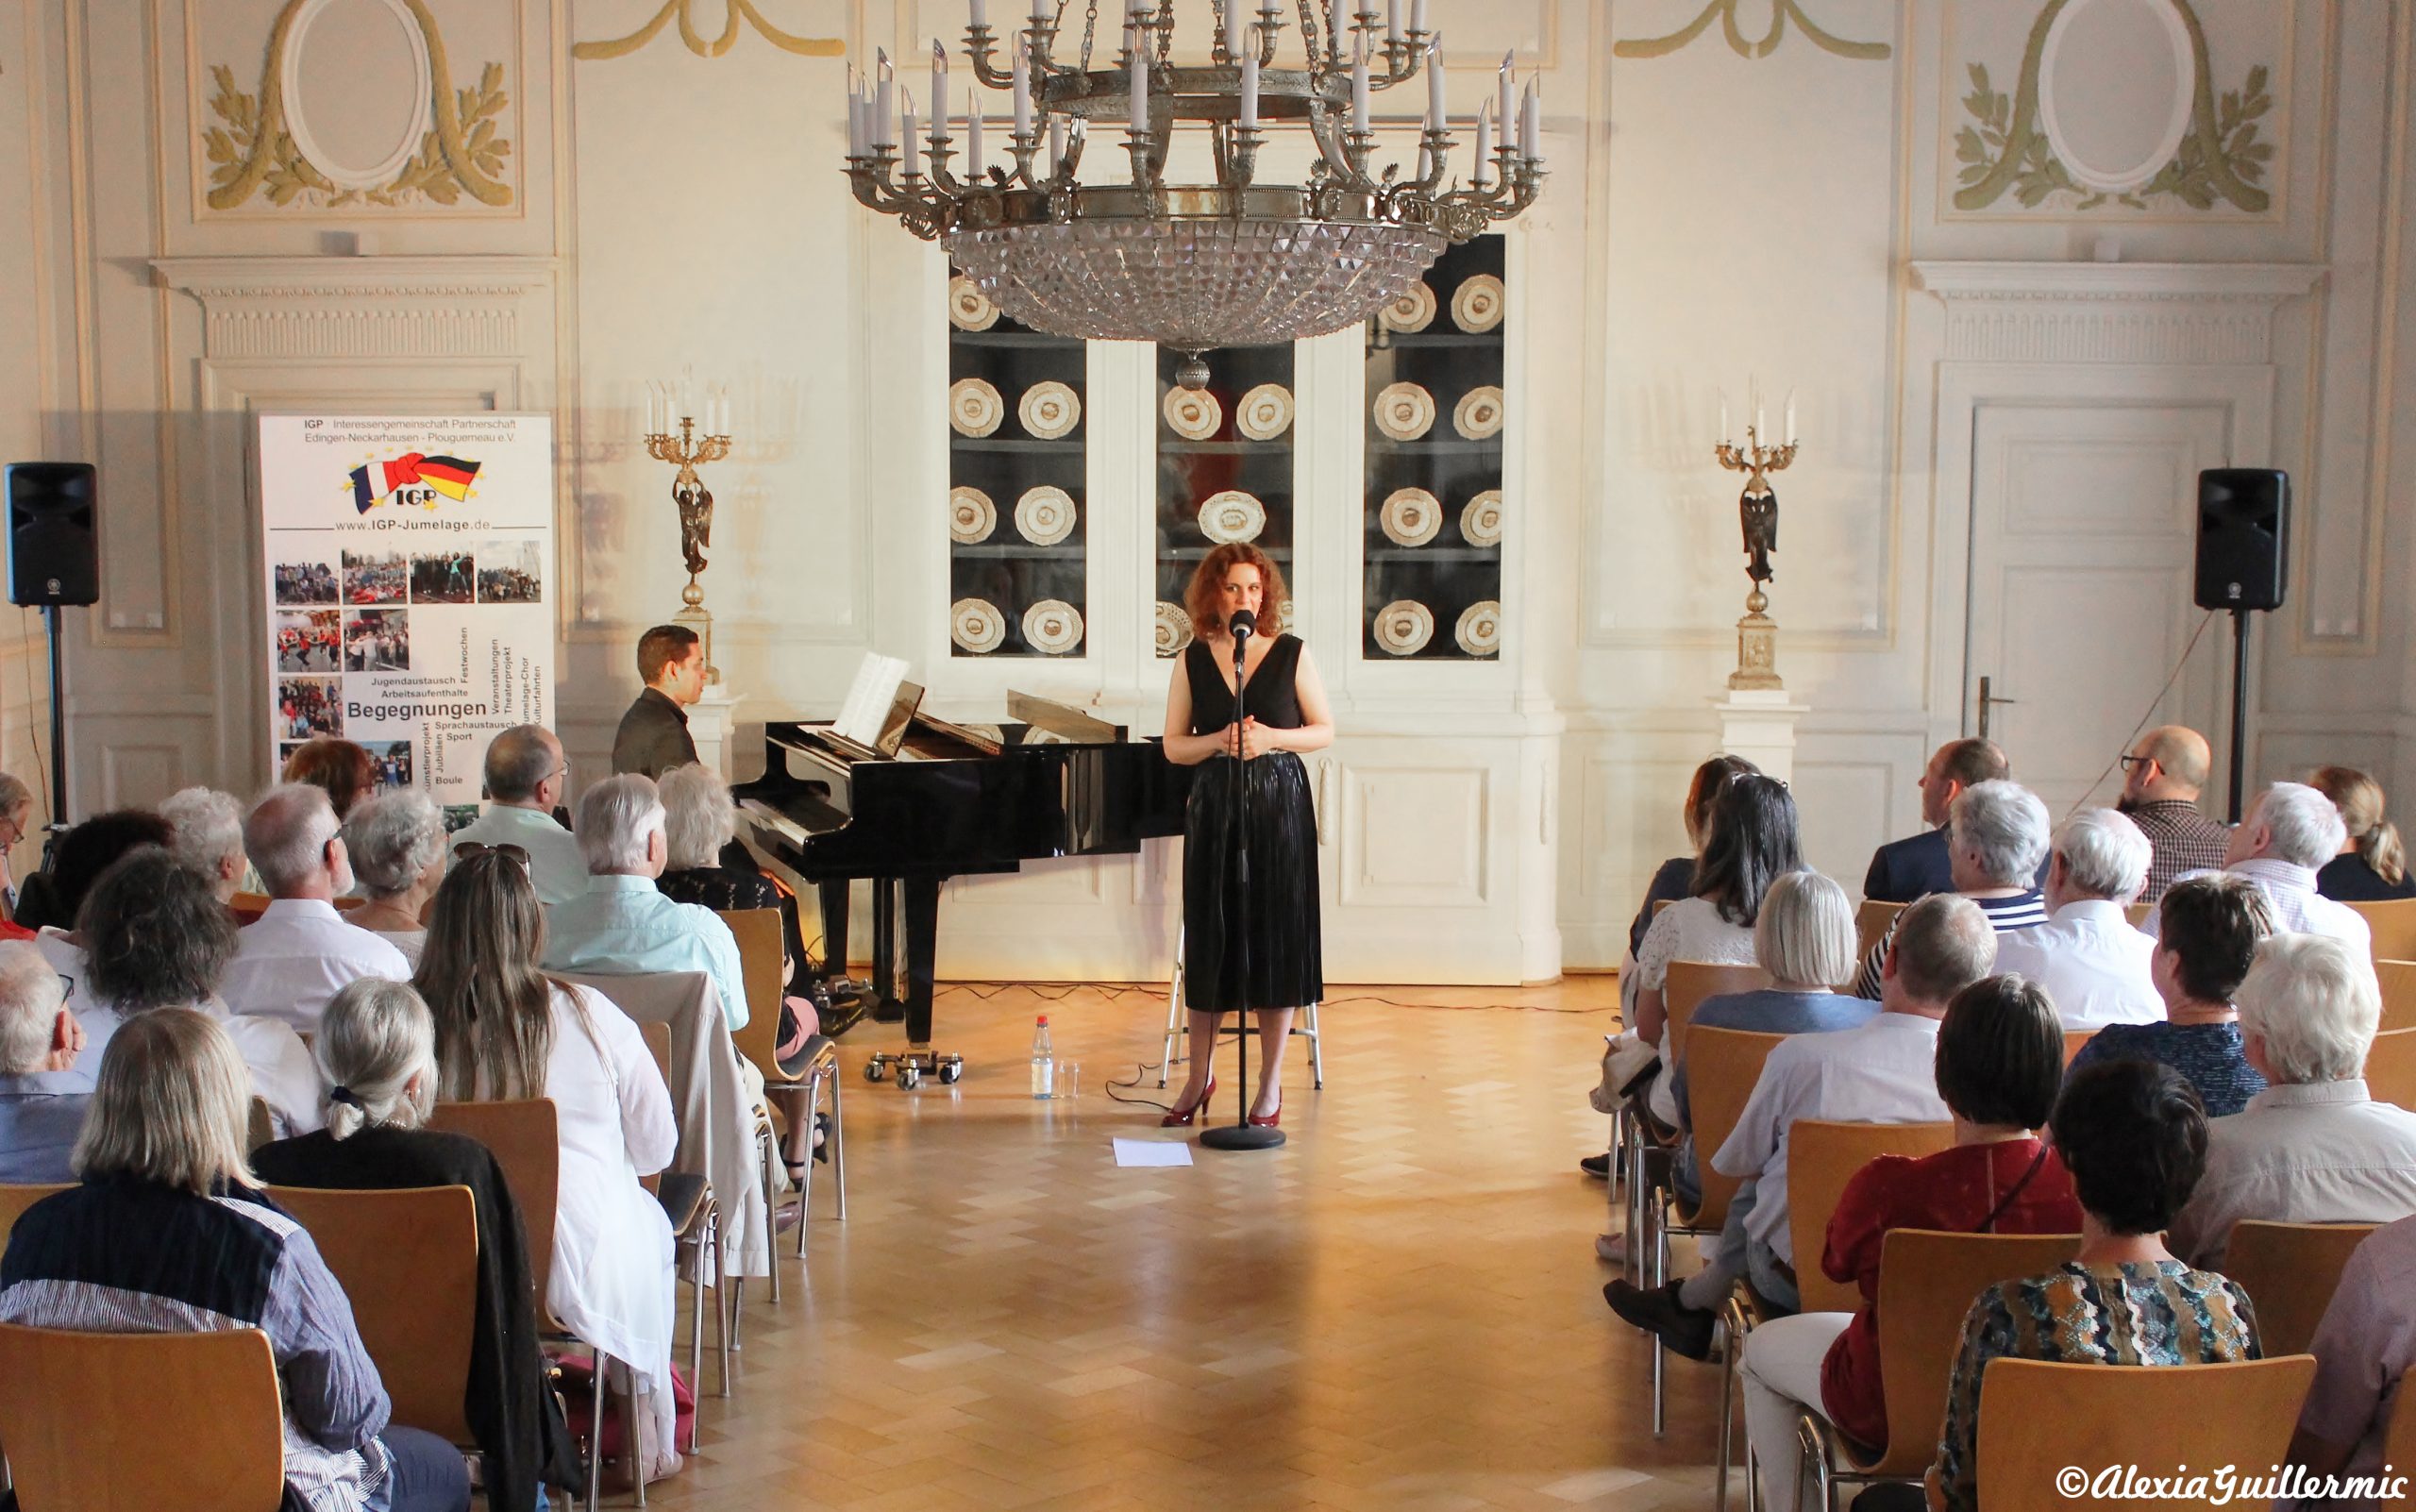 Jedes Jahr organisiert die IGP e.V. einen musikalischen Vormittag zum deutsch-französischen Tag.